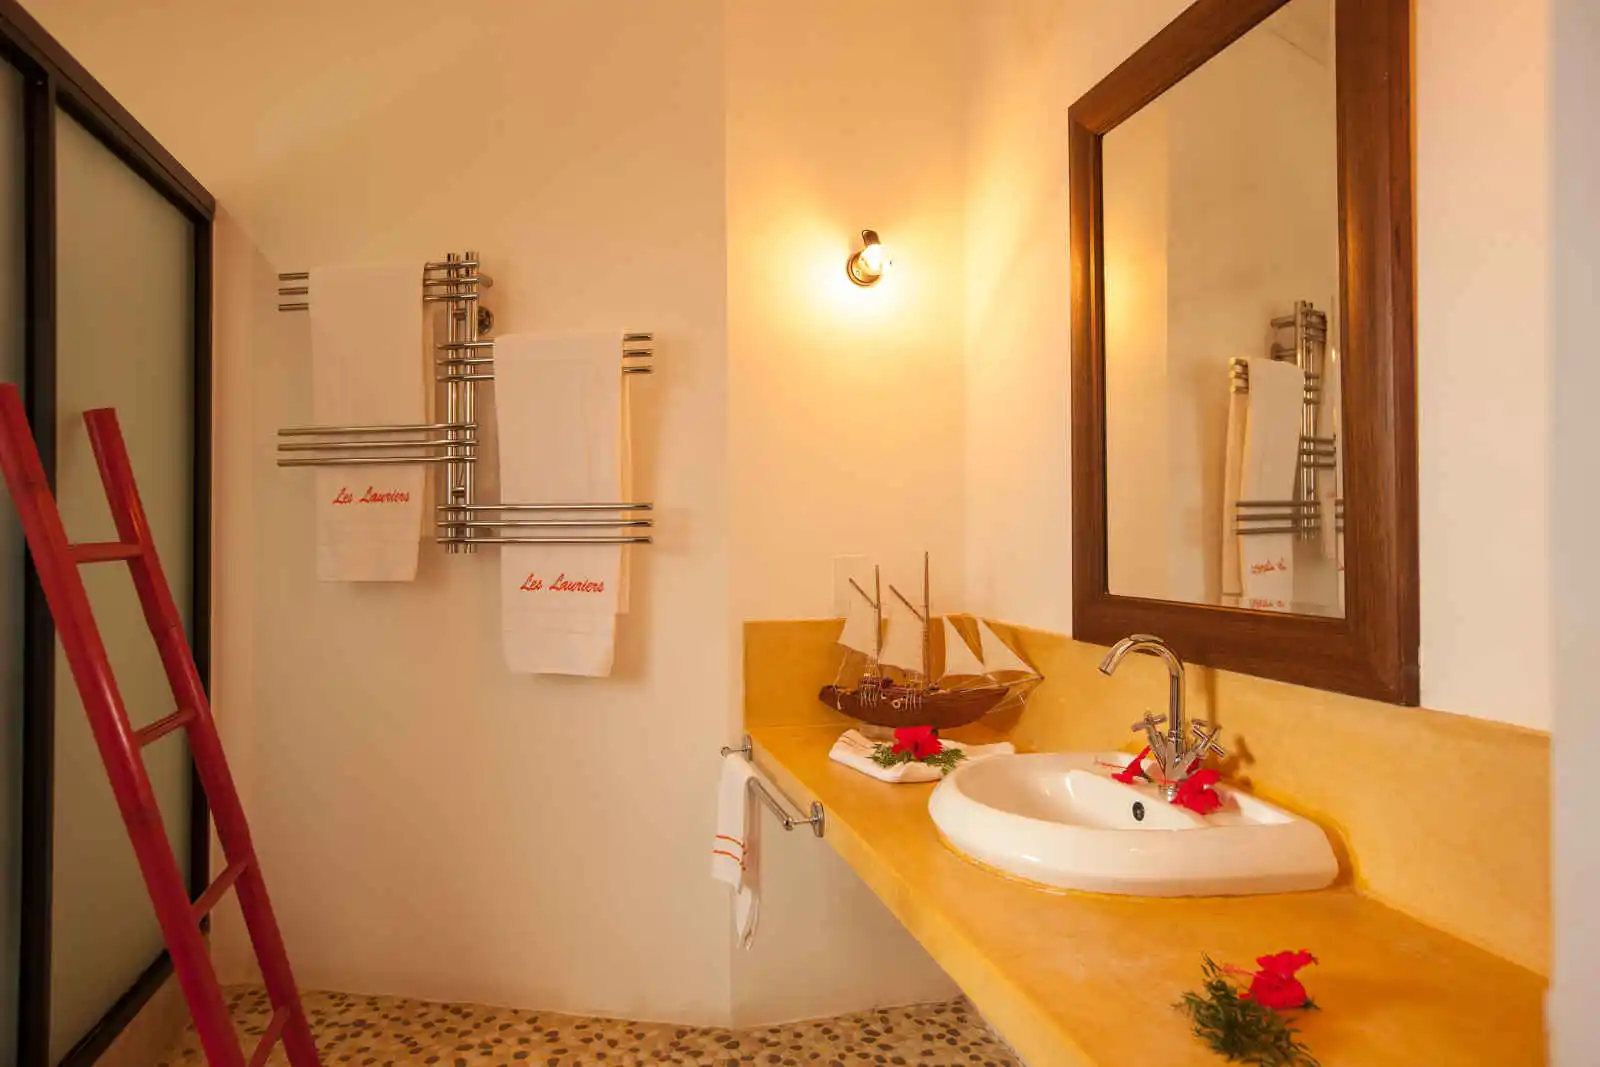 Salle de bain, chambre standard, Les Lauriers Eco Hôtel, Seychelles